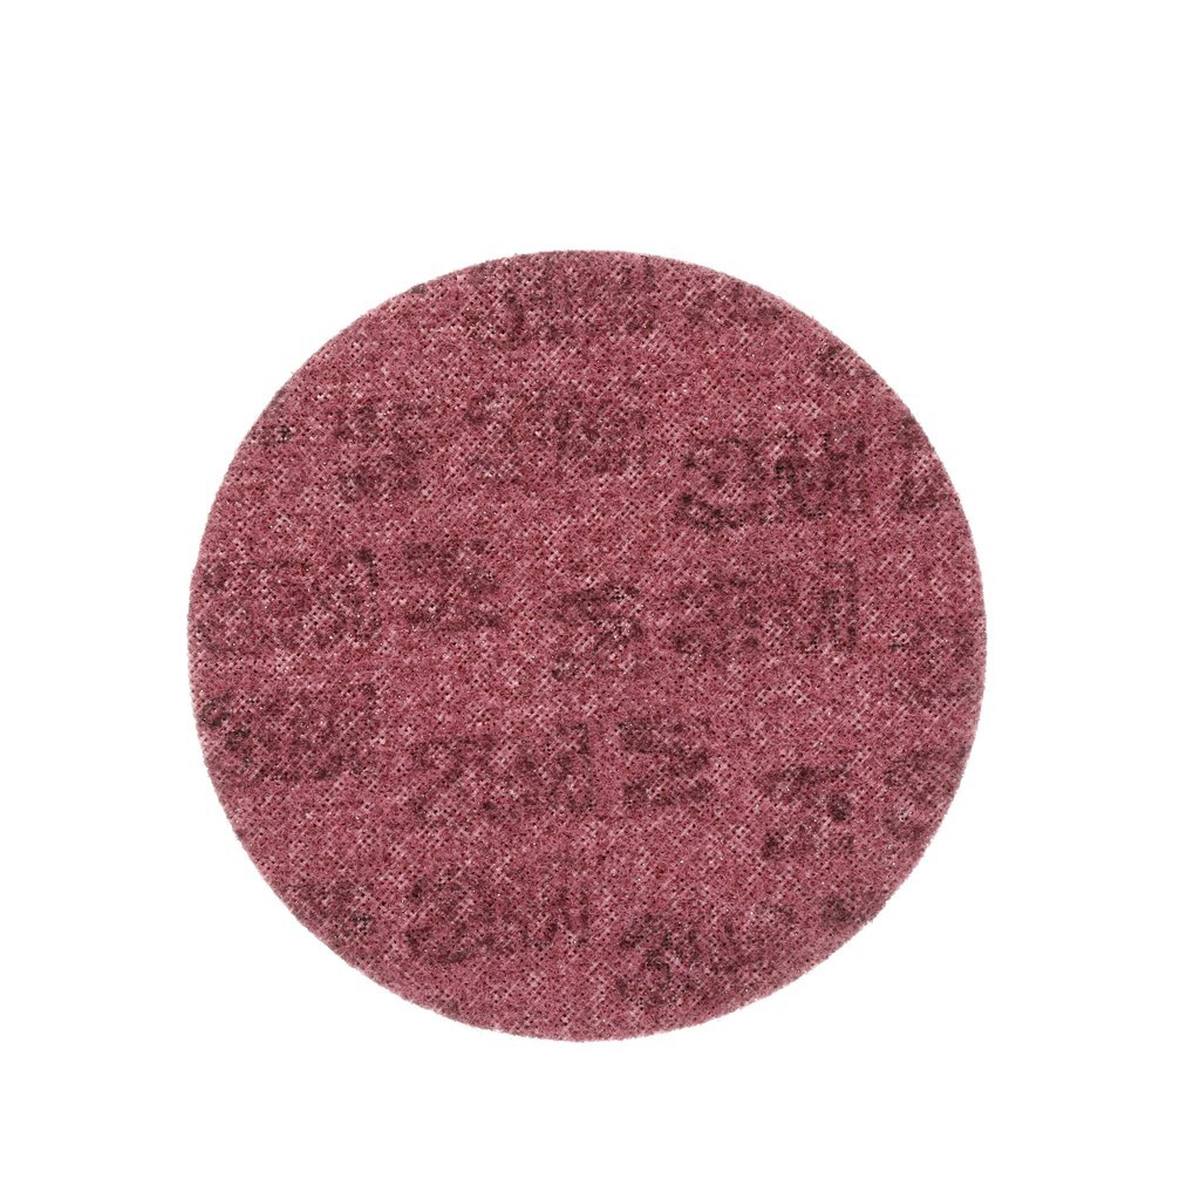 3M Scotch-Brite disco in tessuto non tessuto SC-DH senza centratura, rosso, 115 mm, A, medio #65335